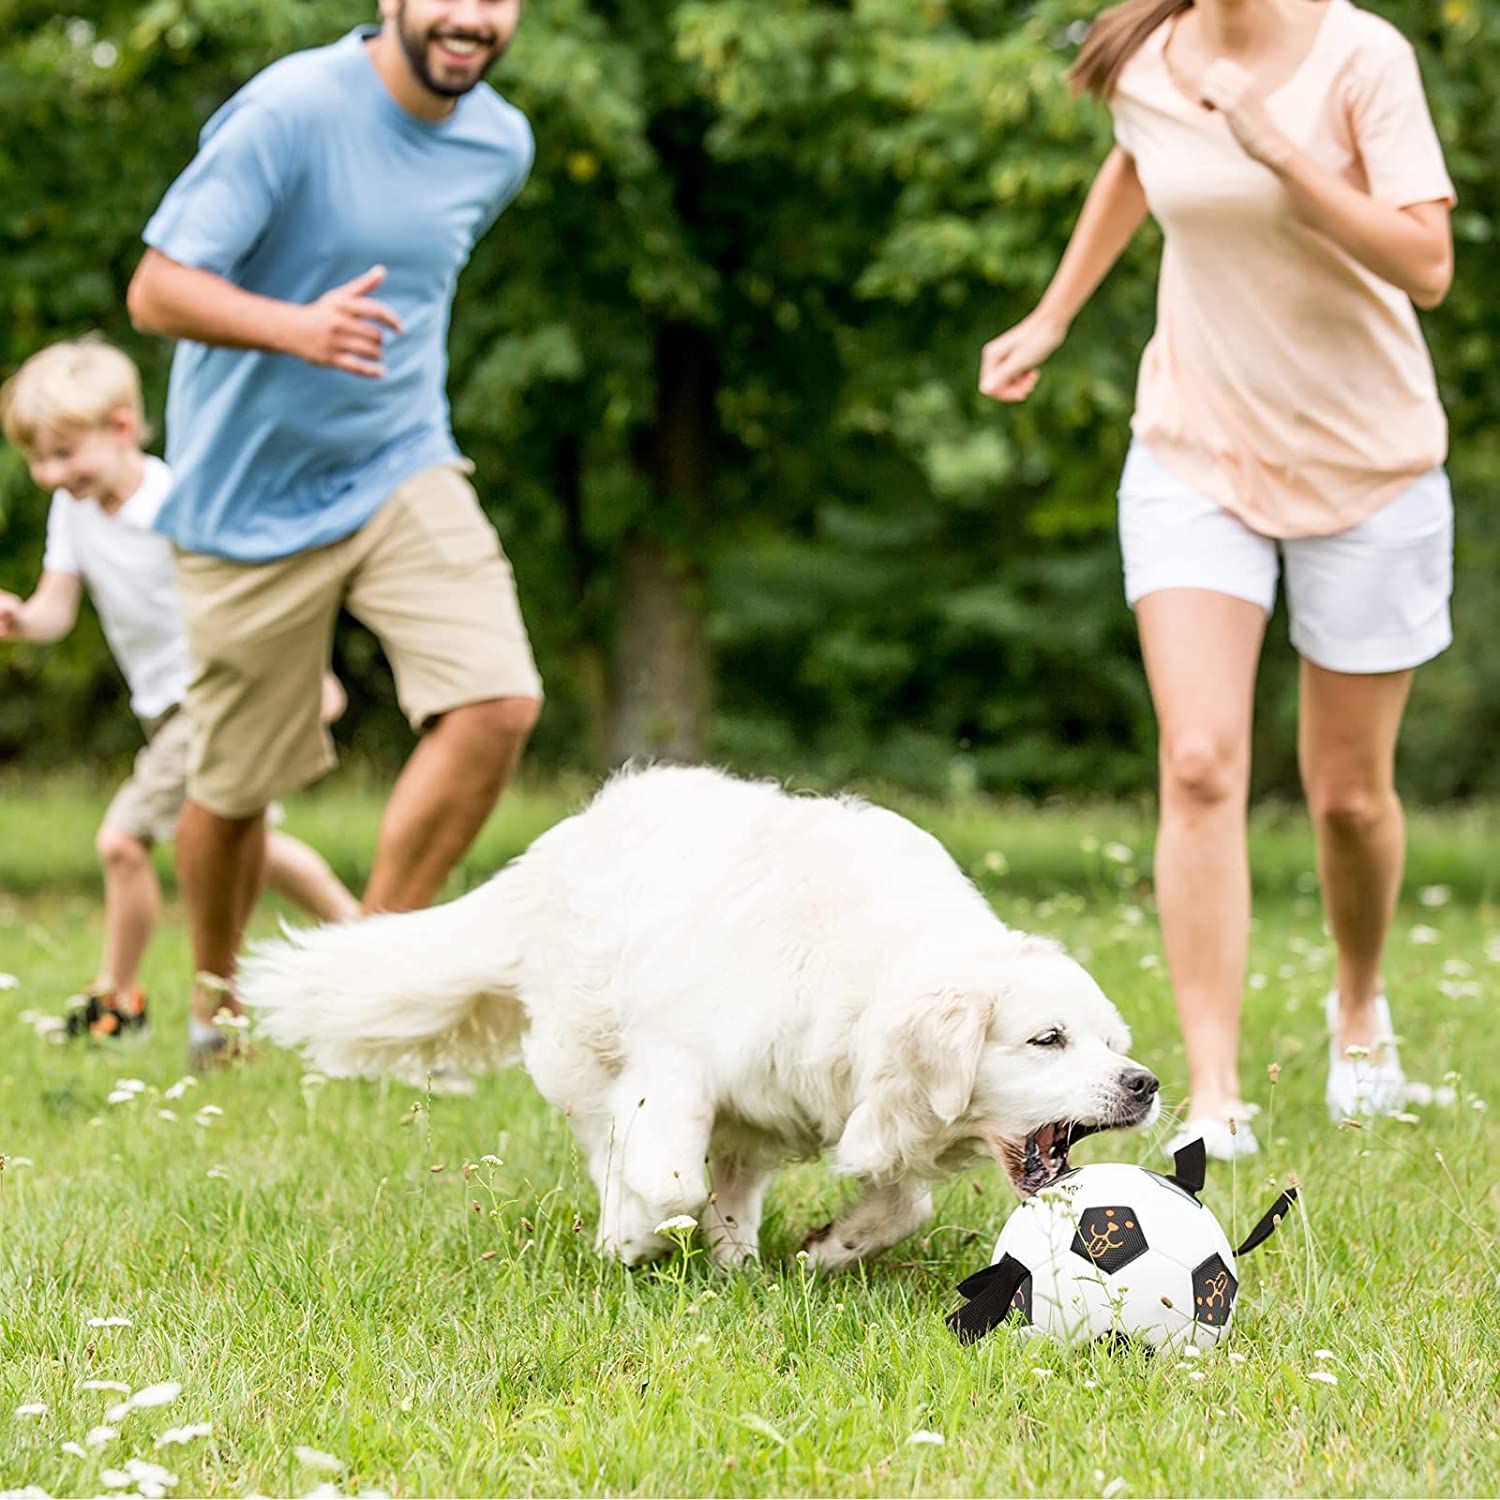 طراحی جذاب توجه سگ شما را به خود جلب می کند تا از بازی لذت ببرند.